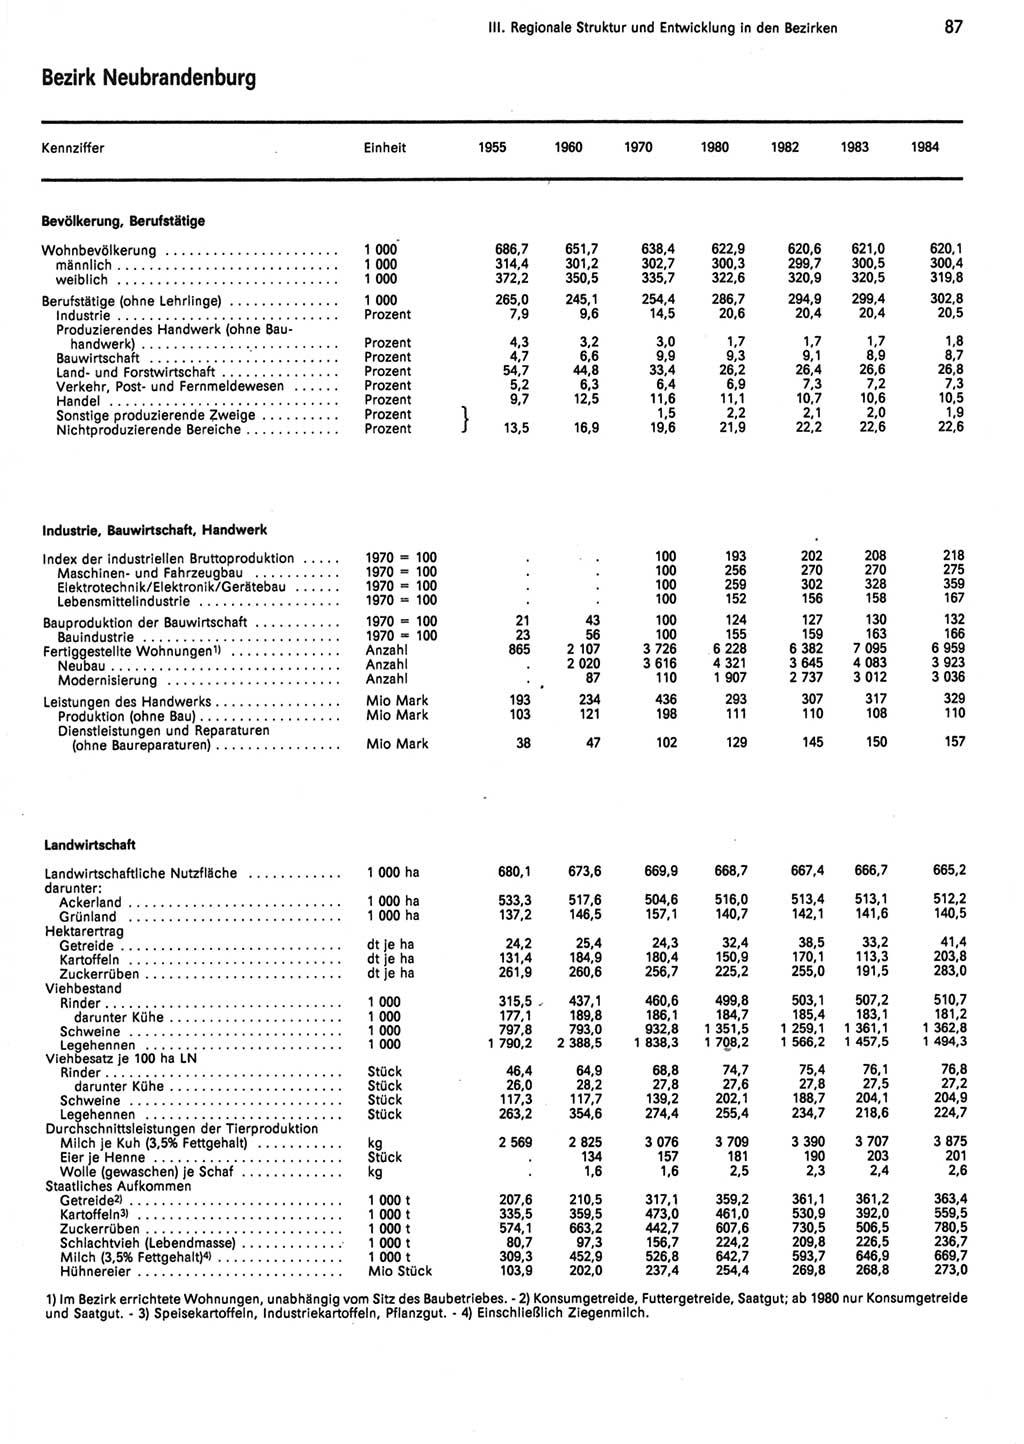 Statistisches Jahrbuch der Deutschen Demokratischen Republik (DDR) 1985, Seite 87 (Stat. Jb. DDR 1985, S. 87)